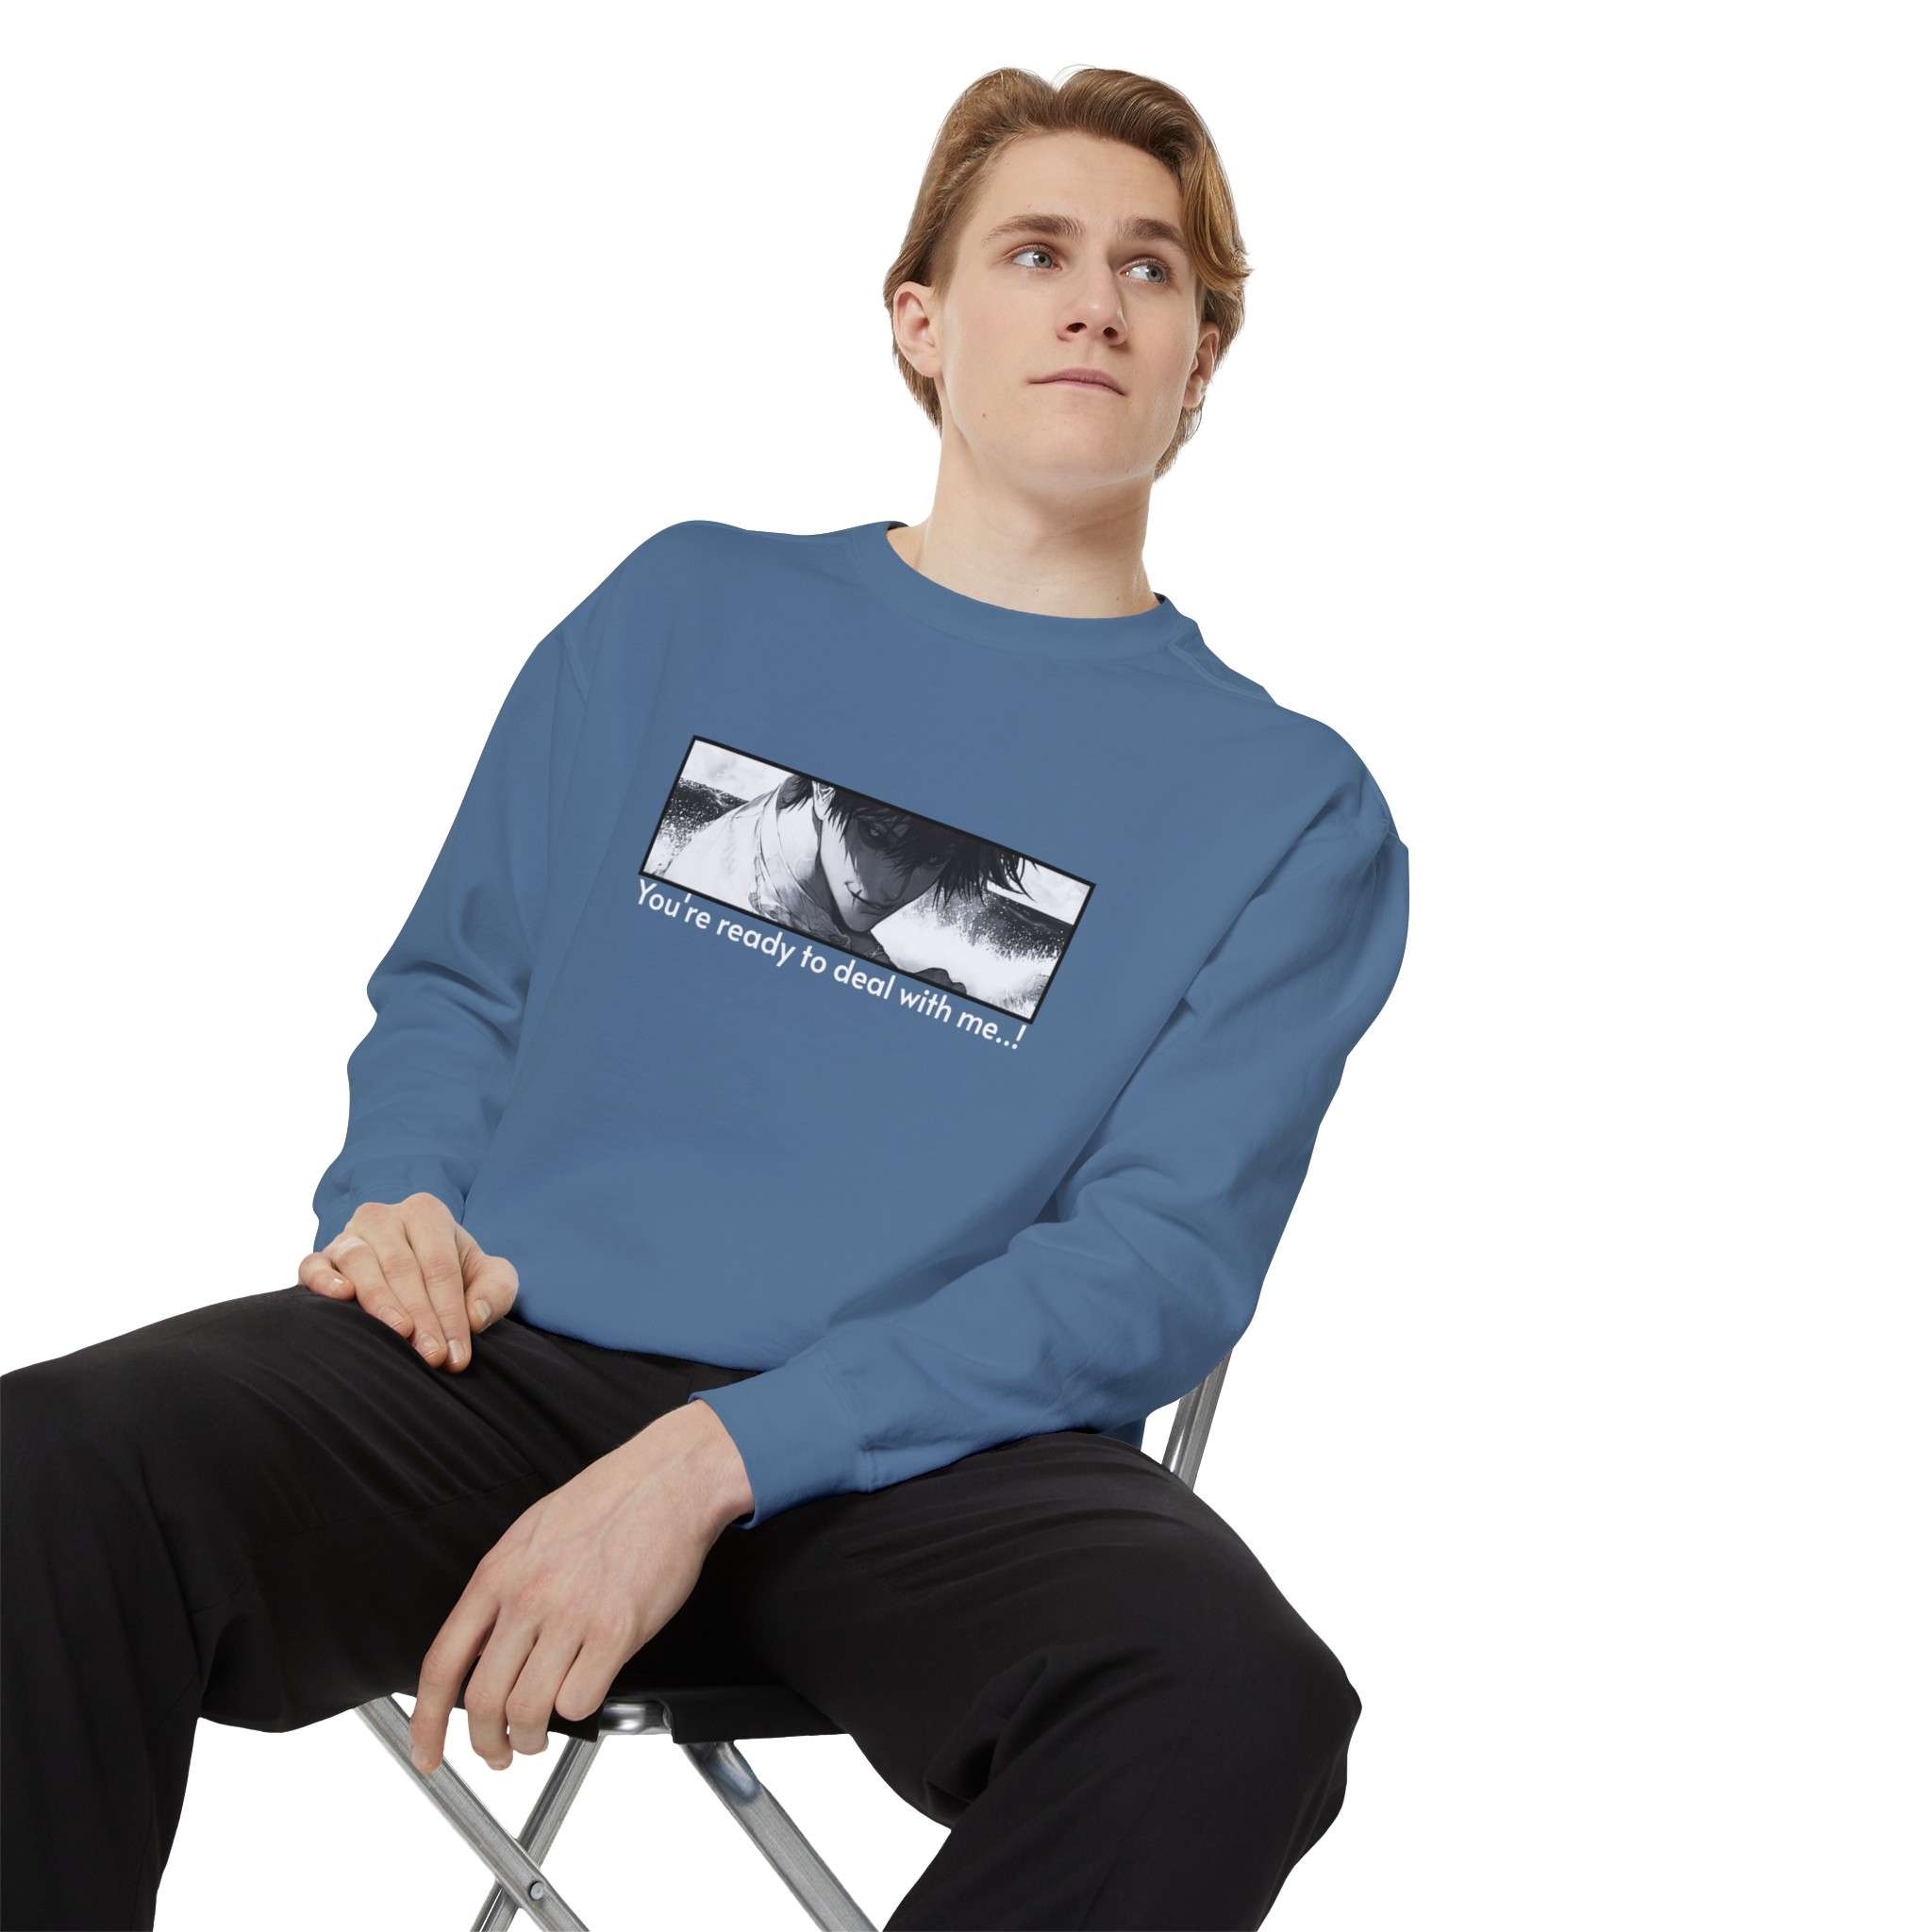 The Tojo Fushiguro Signature Unisex Garment-Dyed Sweatshirt